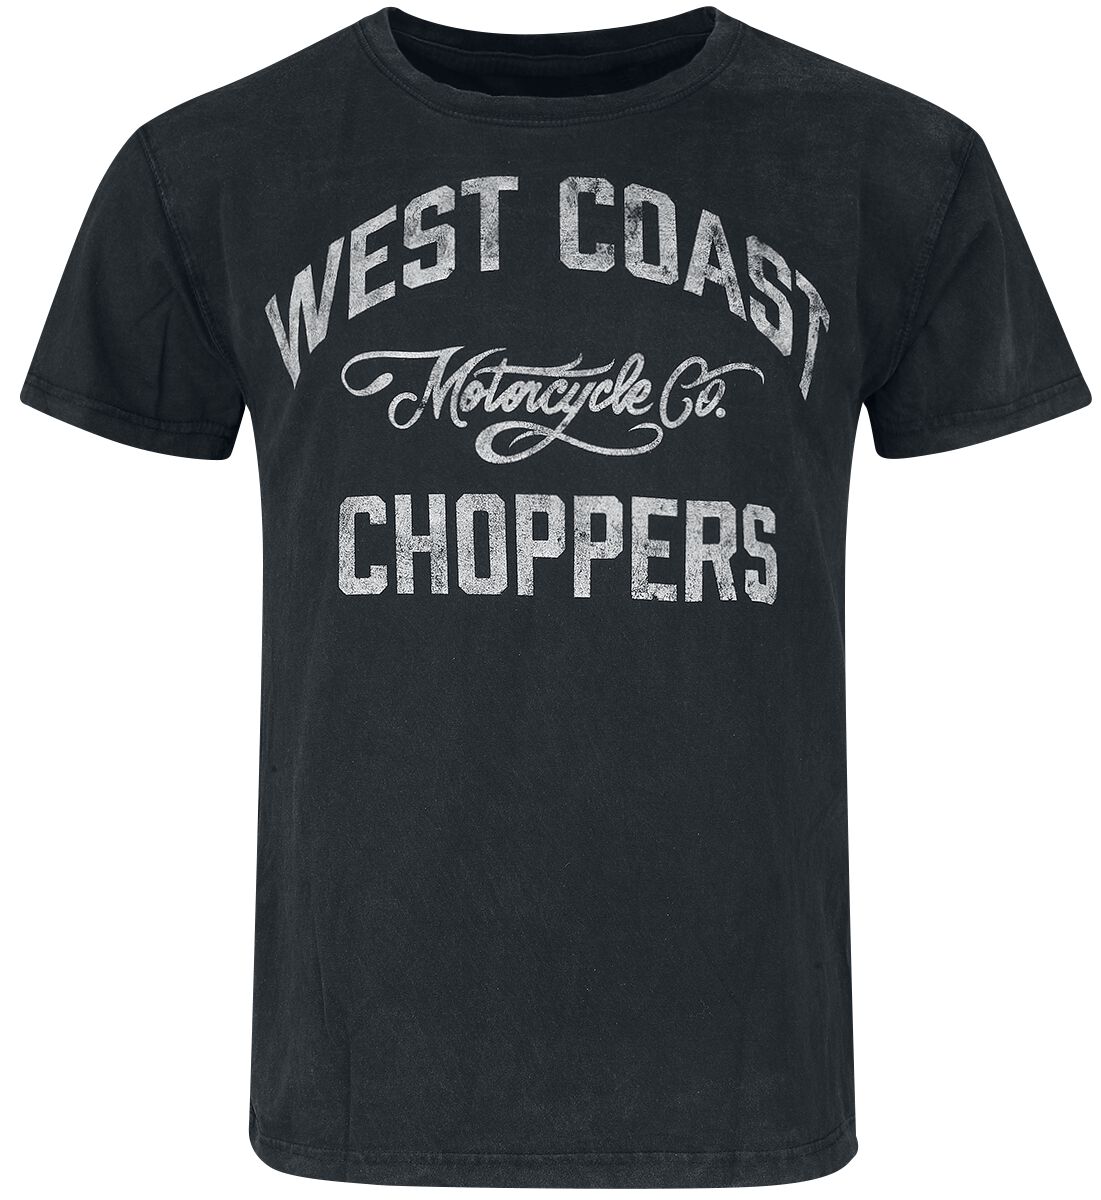 West Coast Choppers T-Shirt - Motorcycle Co. - S bis 3XL - für Männer - Größe S - schwarz